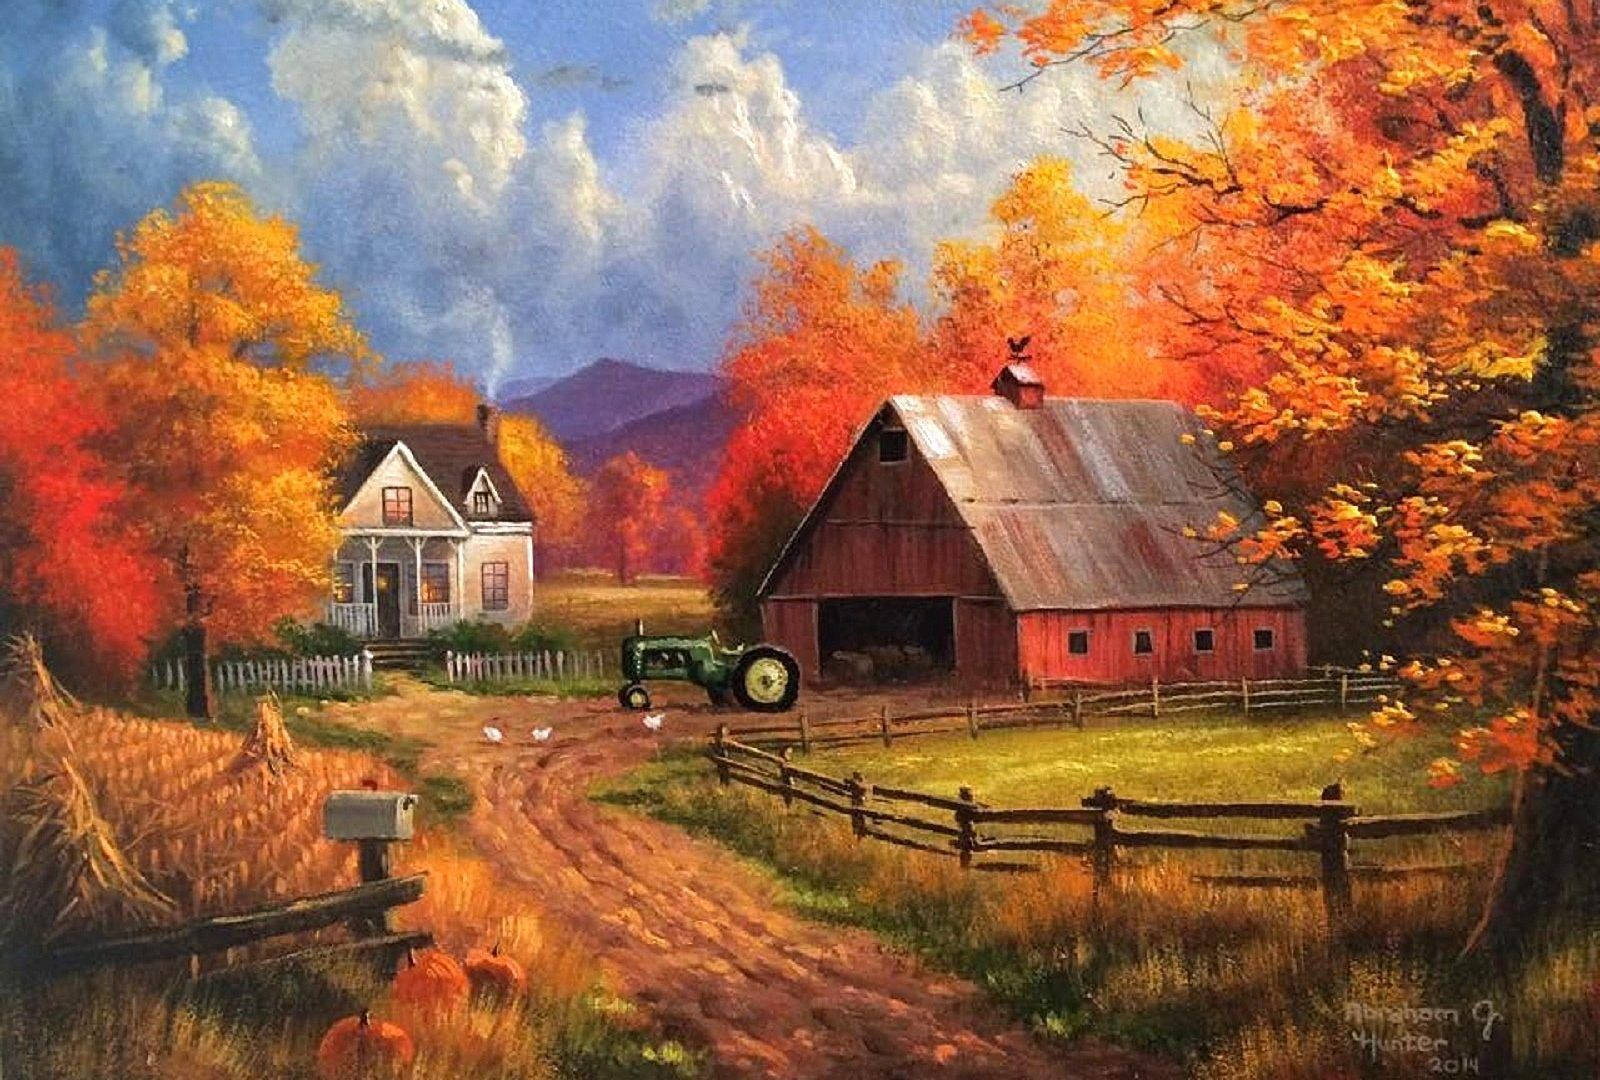 Et maleri af en gård med en rød lade og en traktor Wallpaper